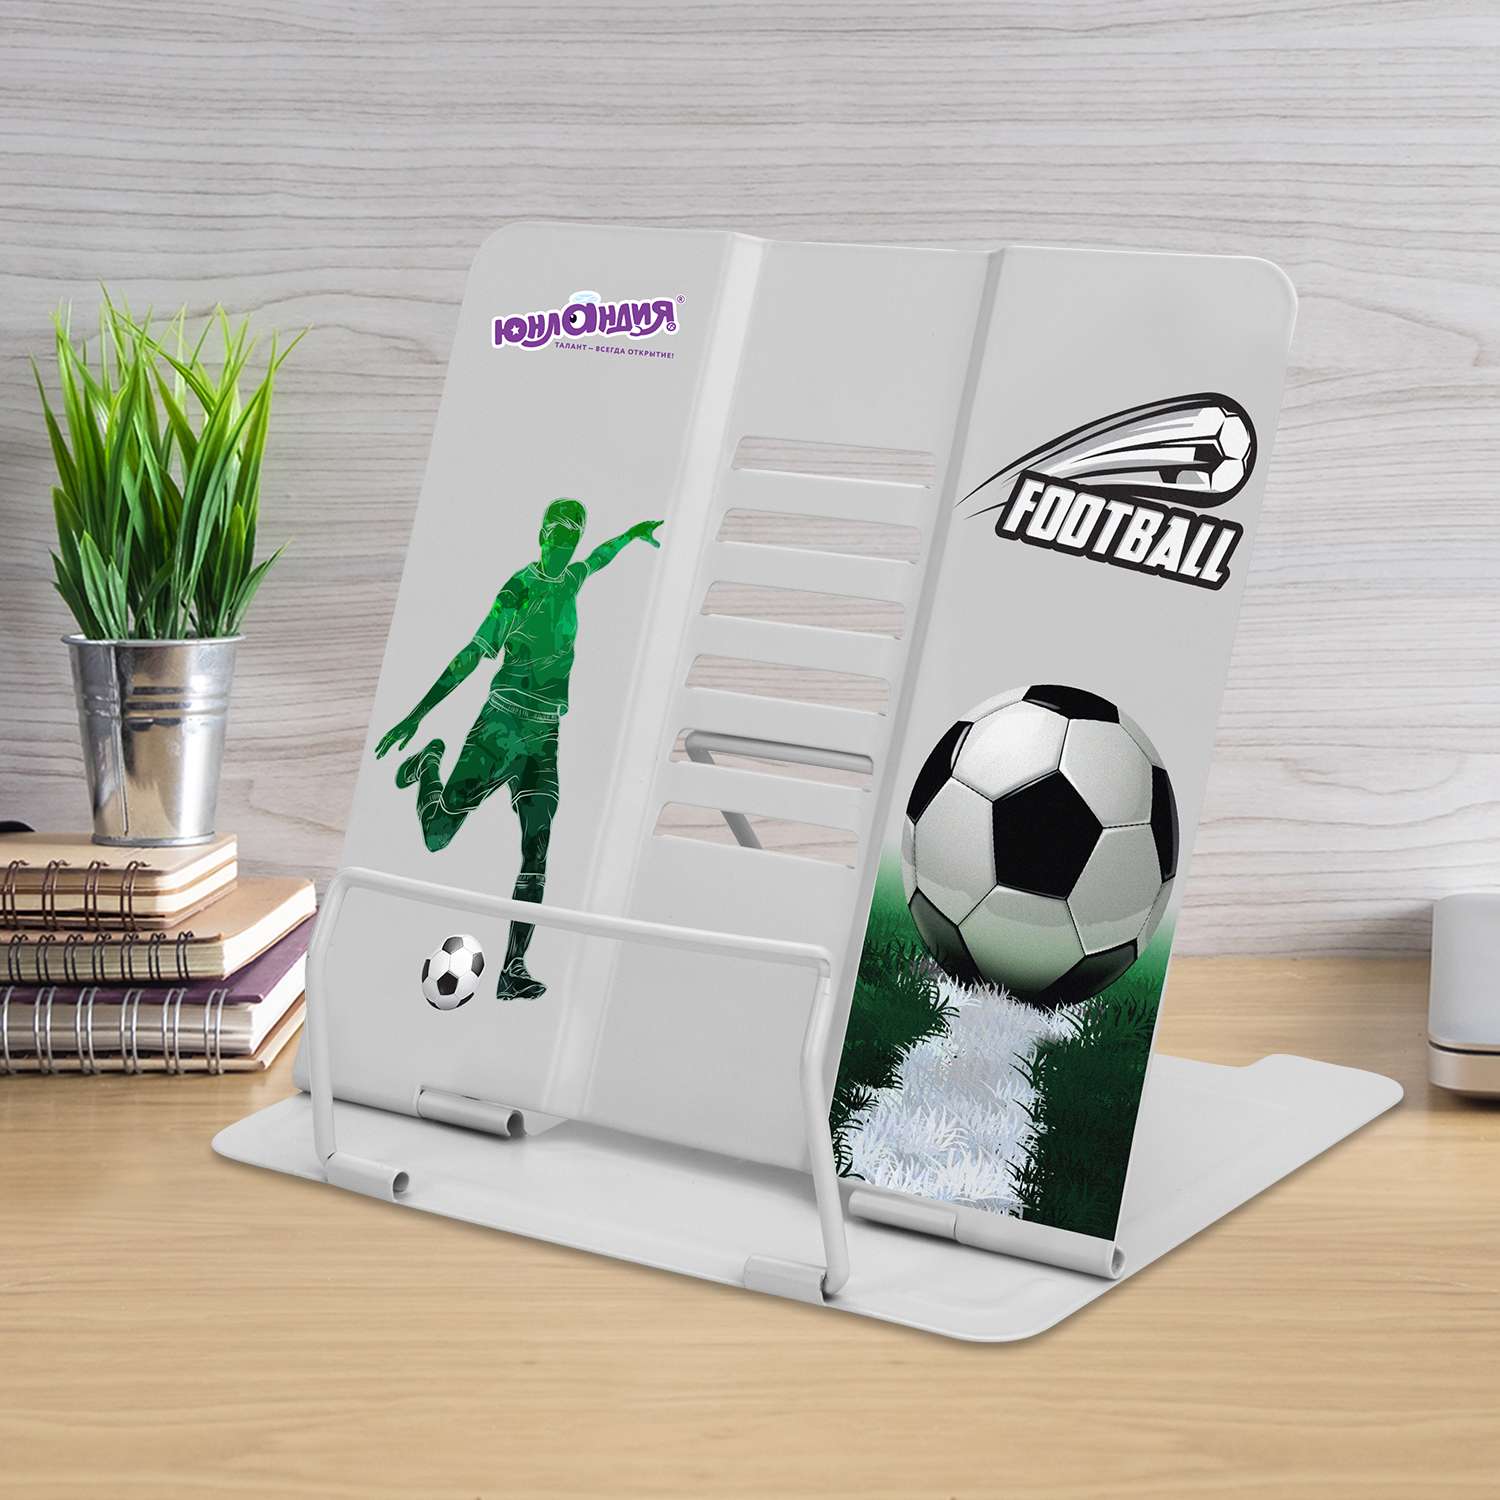 Подставка Юнландия для книг/учебников/журналов настольная школьная Play Football - фото 1